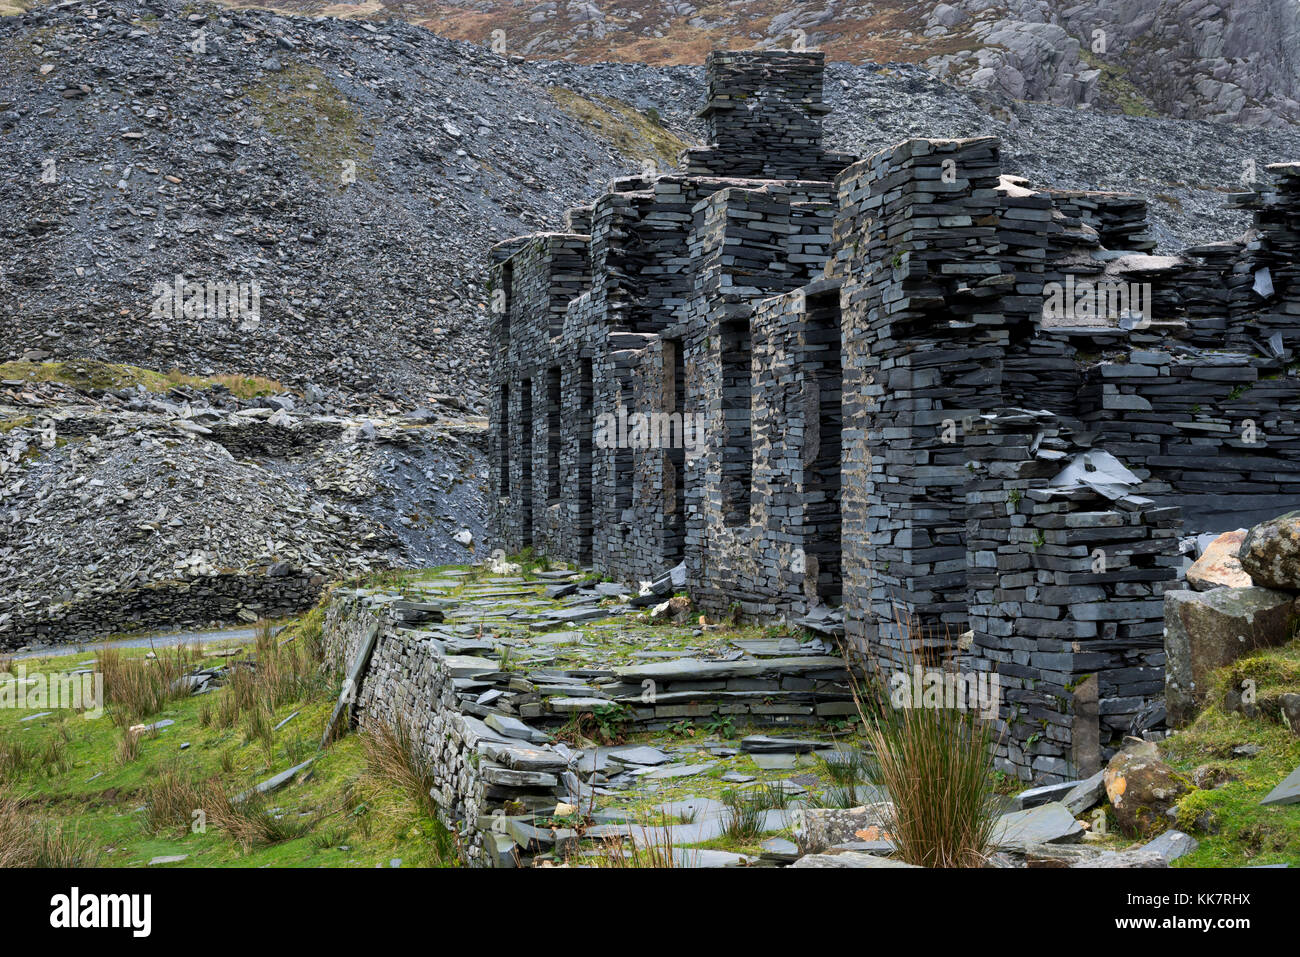 Die Ruinen der alten Schiefergrube Gebäude am cwmorthin, tanygrisiau, North Wales. Ein alter Steinbruch in die Berge, jetzt eine beliebte Gegend mit Wanderern. Stockfoto